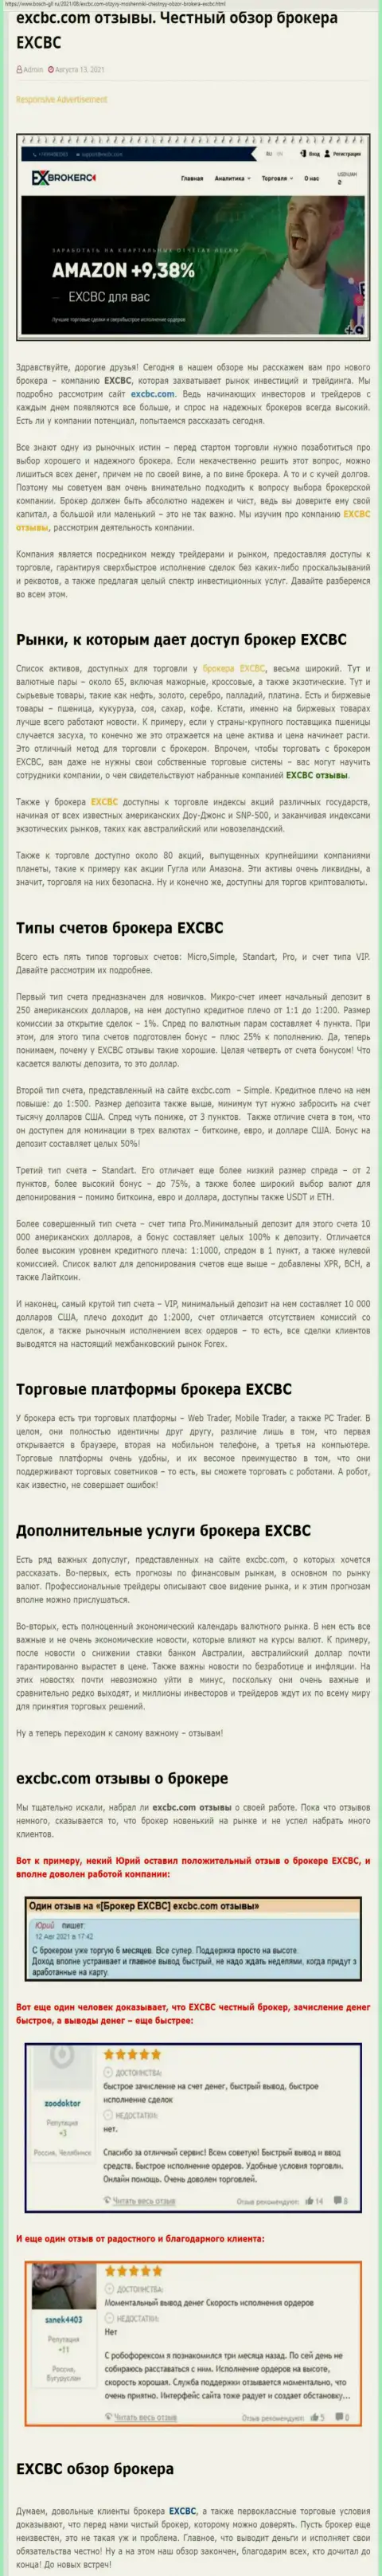 Информация об ФОРЕКС-дилере EXCBC Сom на web-сервисе bosch gll ru